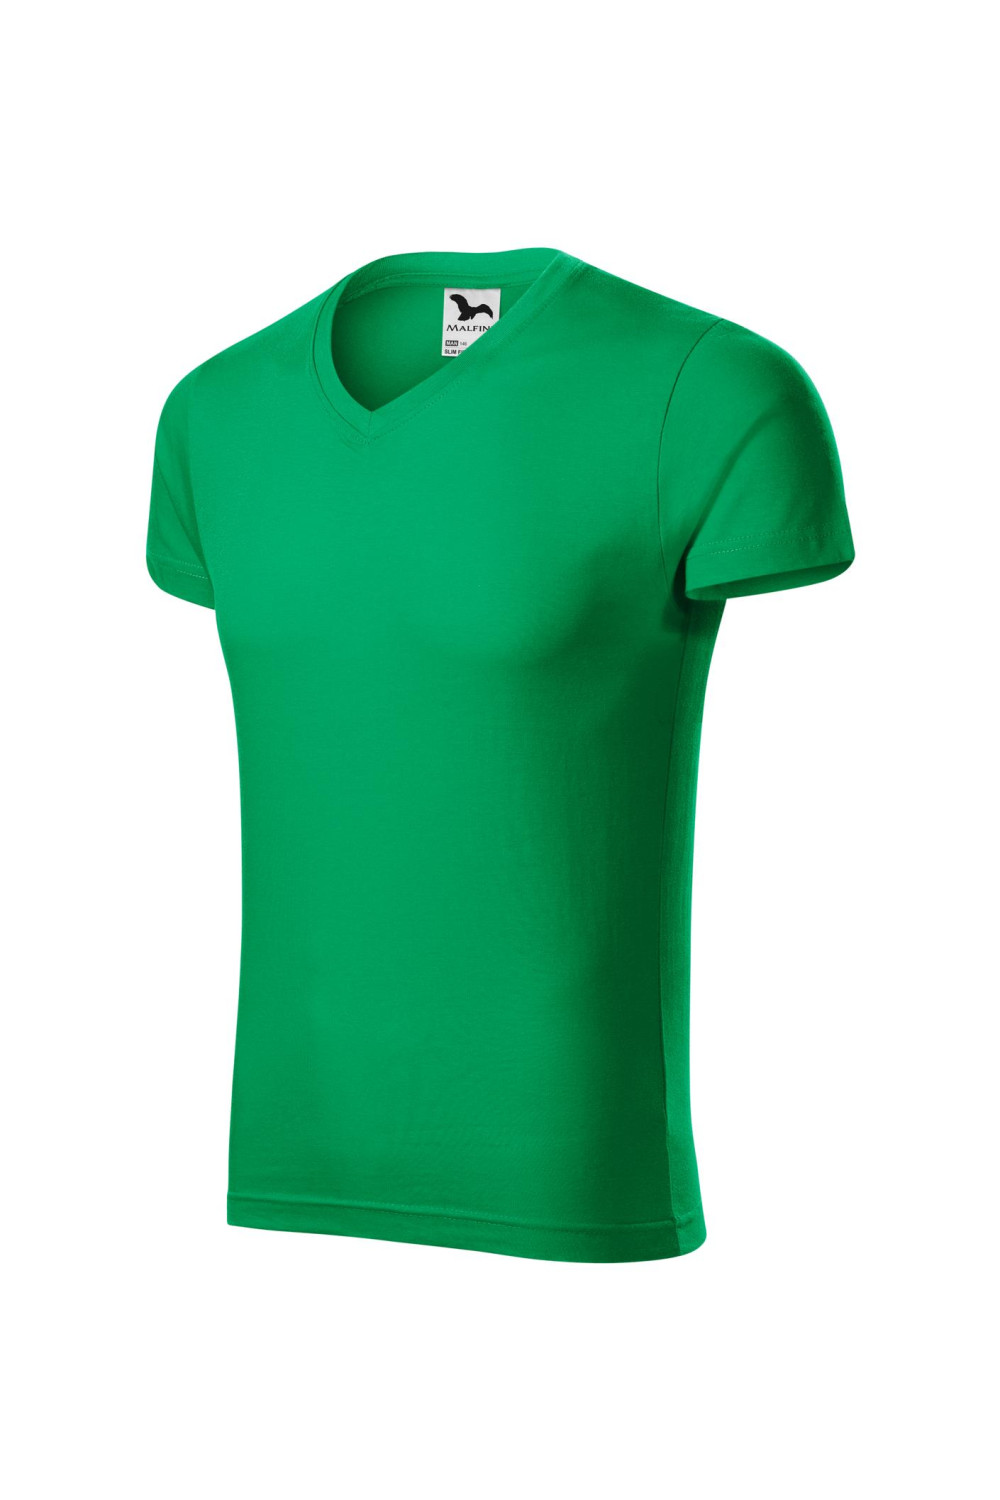 Koszulka męska 100% bawełna t-shirt SLIM FIT V-NECK 146 kolor zieleń trawy